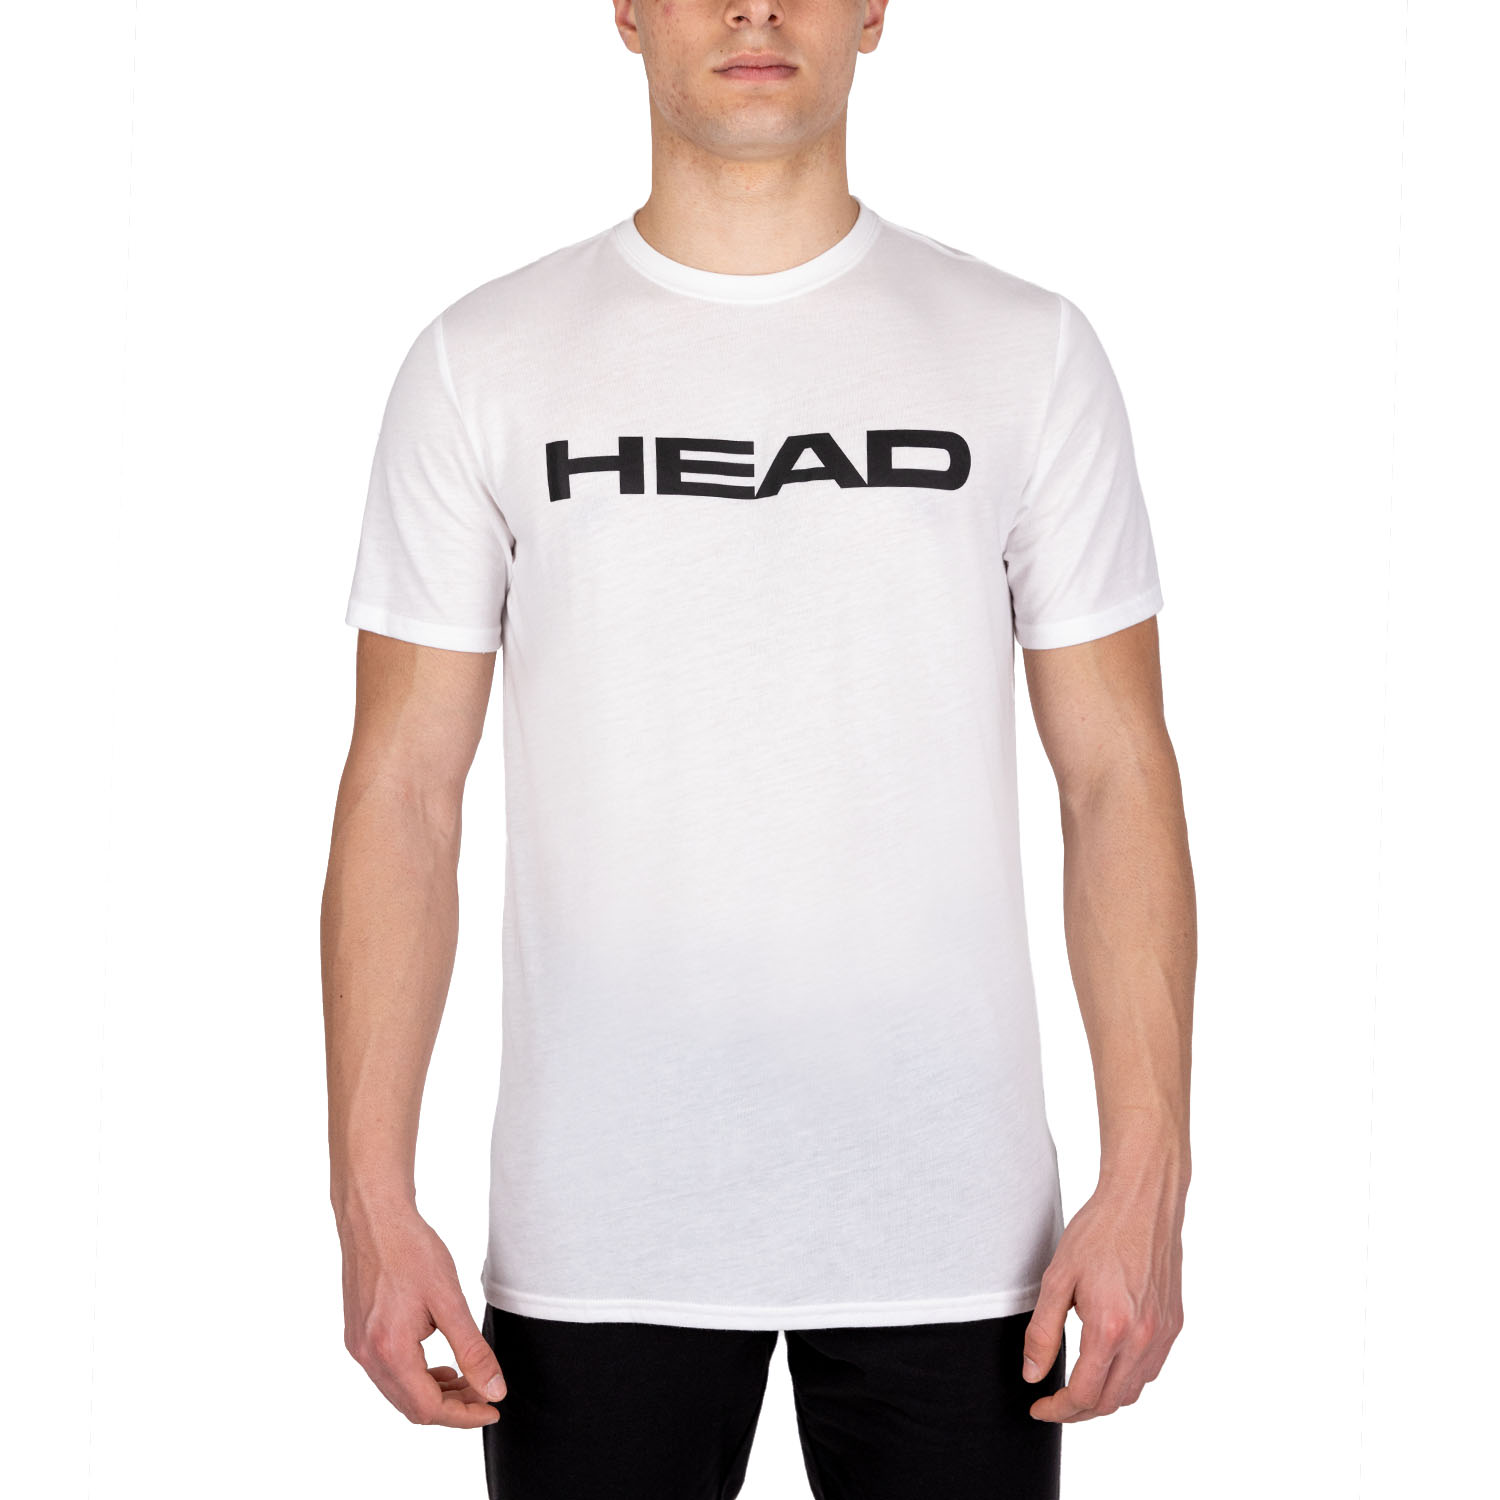 Head Club Ivan T-Shirt - White